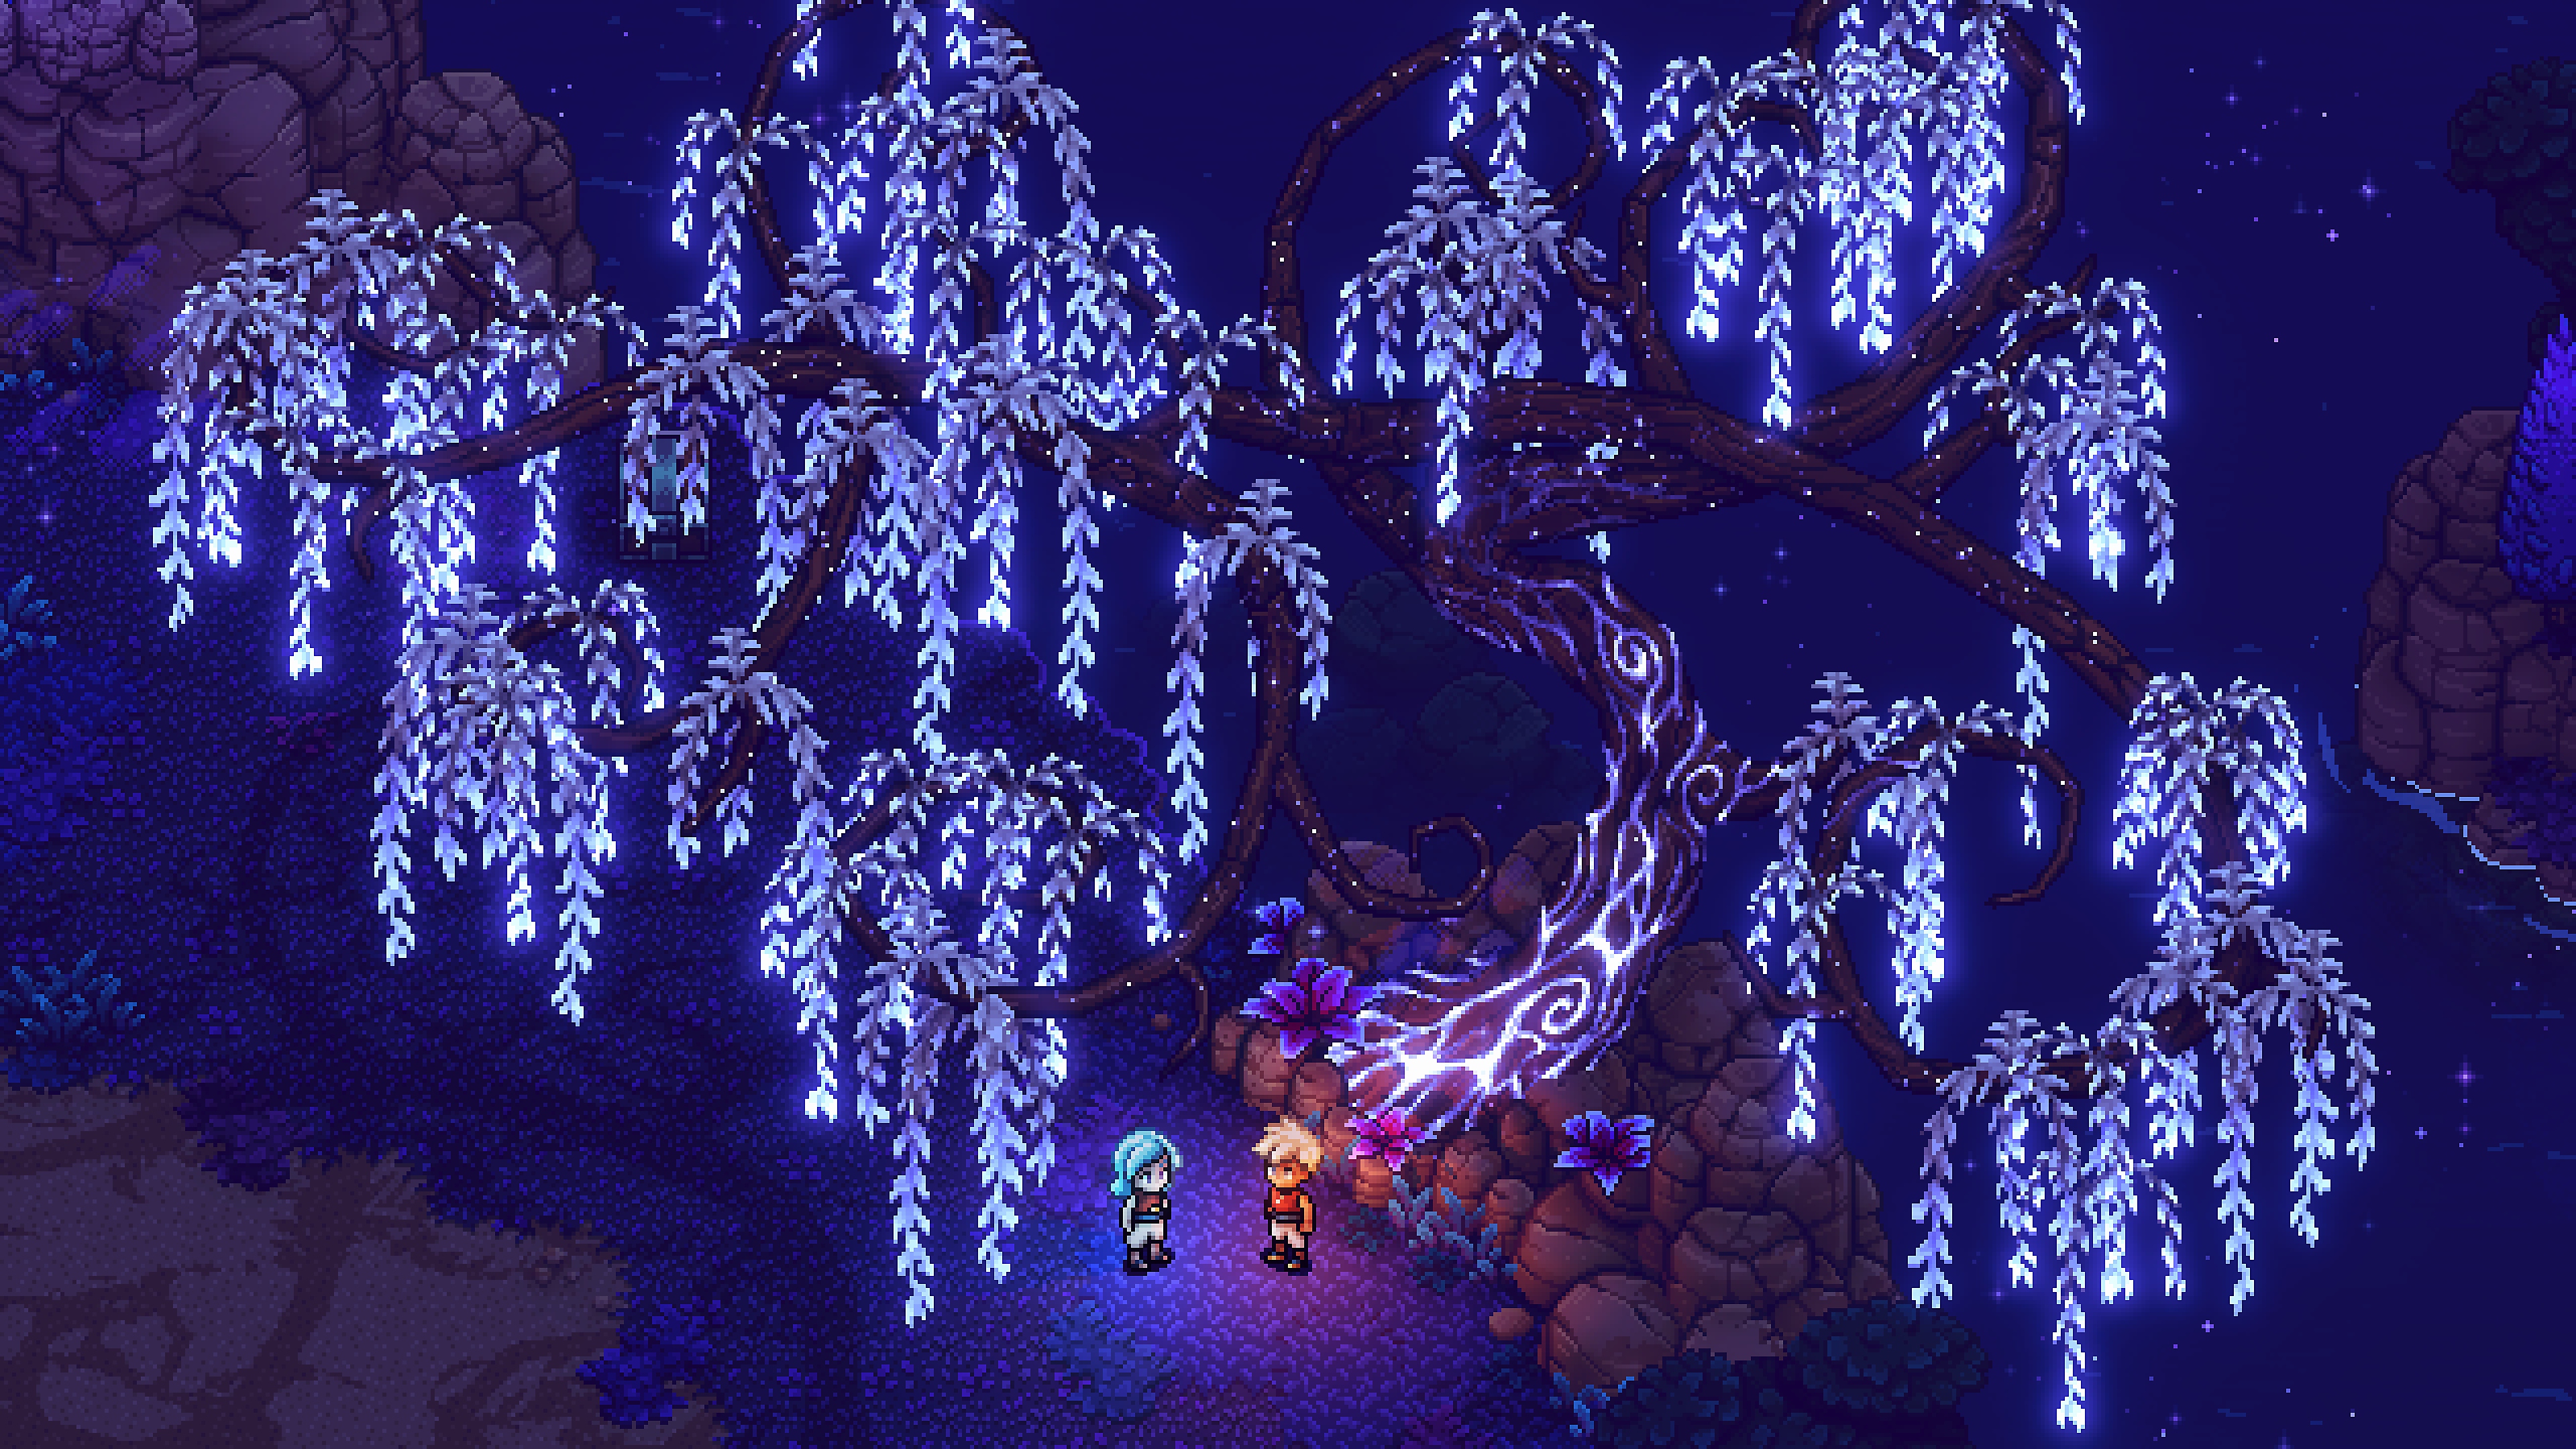 Sea of Stars 光る木の下にいるキャラクターのスクリーンショット